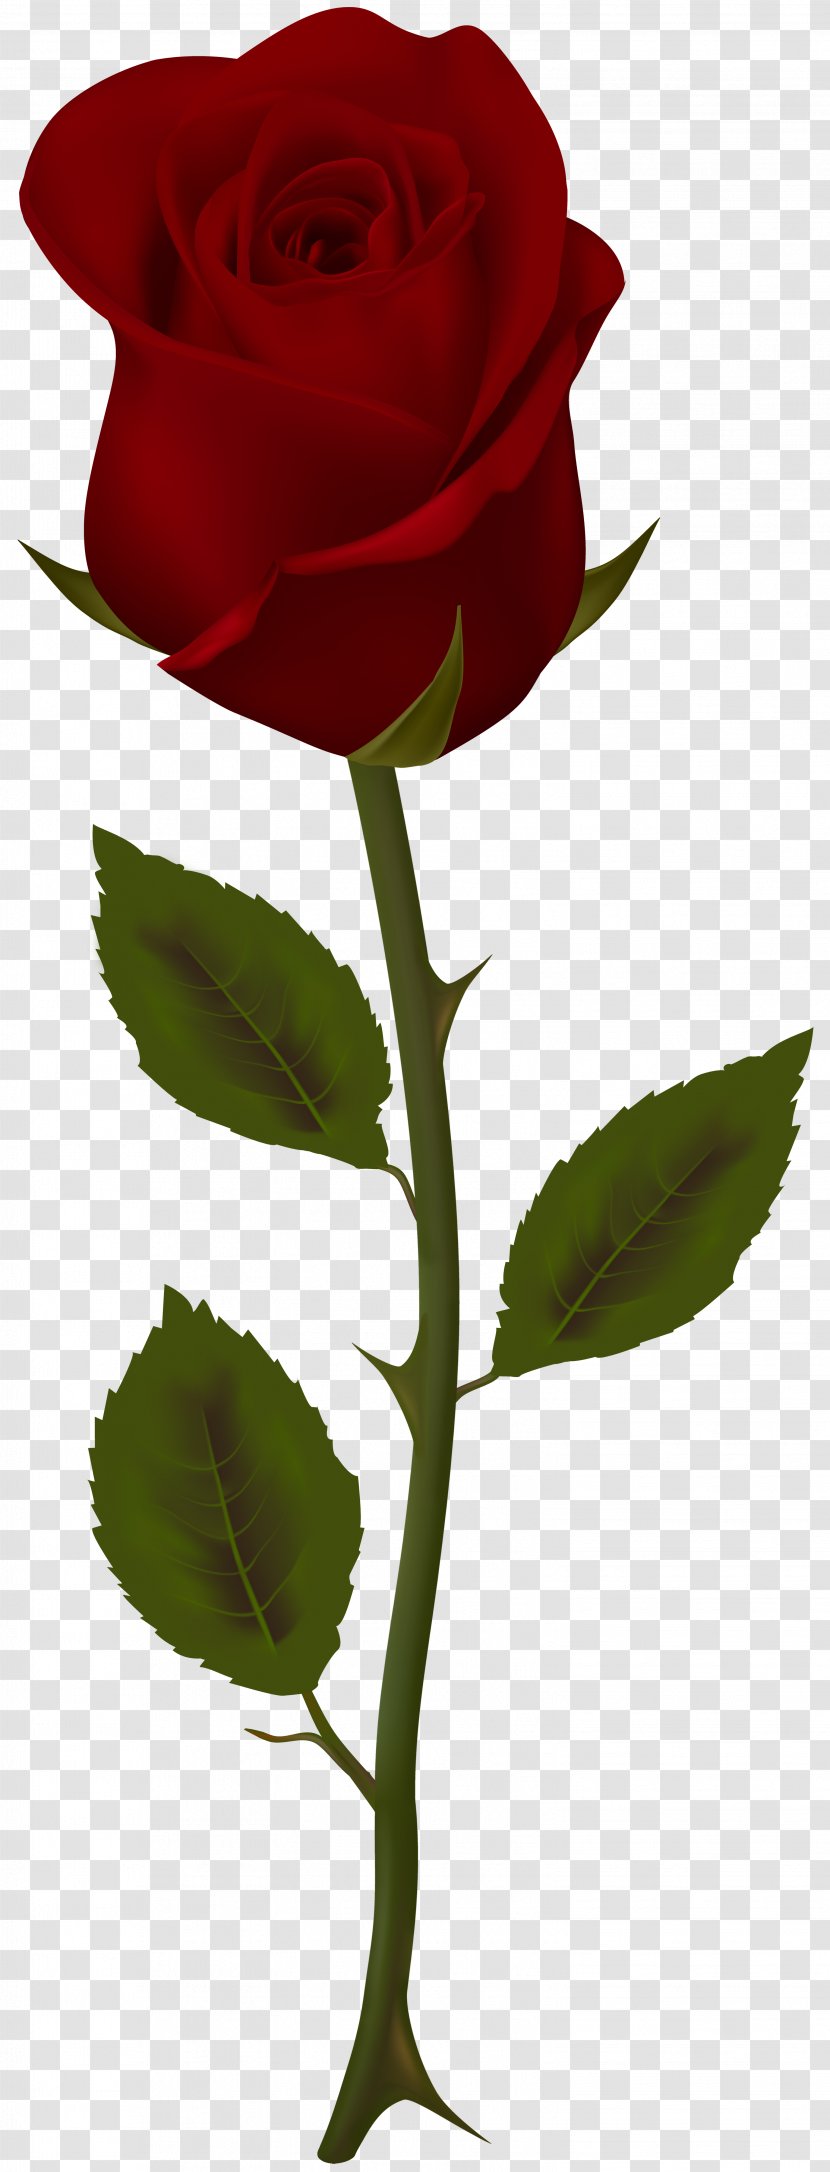 Garden Roses Flower Clip Art - Red - Rose Transparent PNG